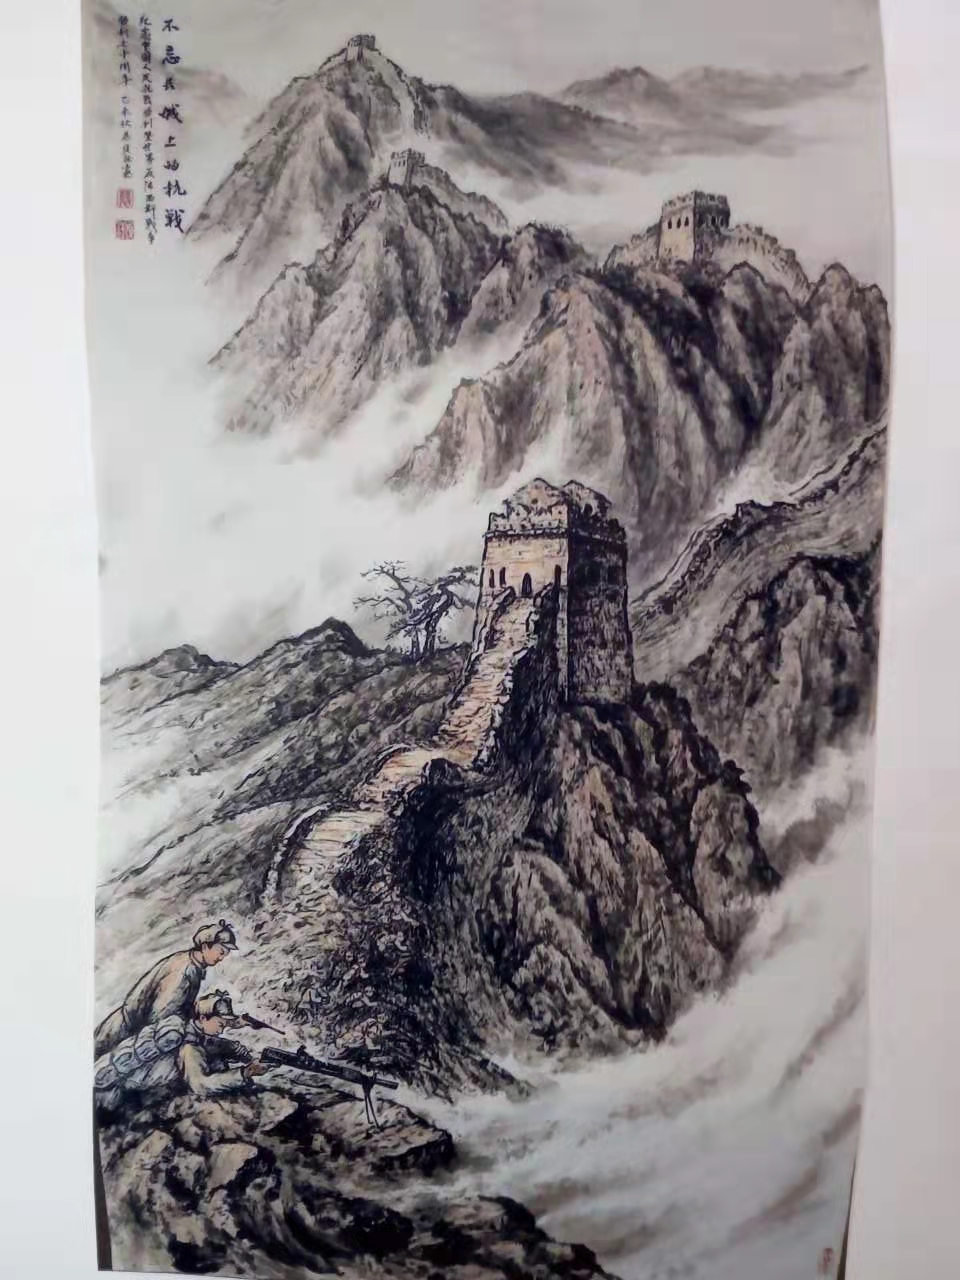 中国大众文化学会名人书画艺术发展委员会——慕俊钰